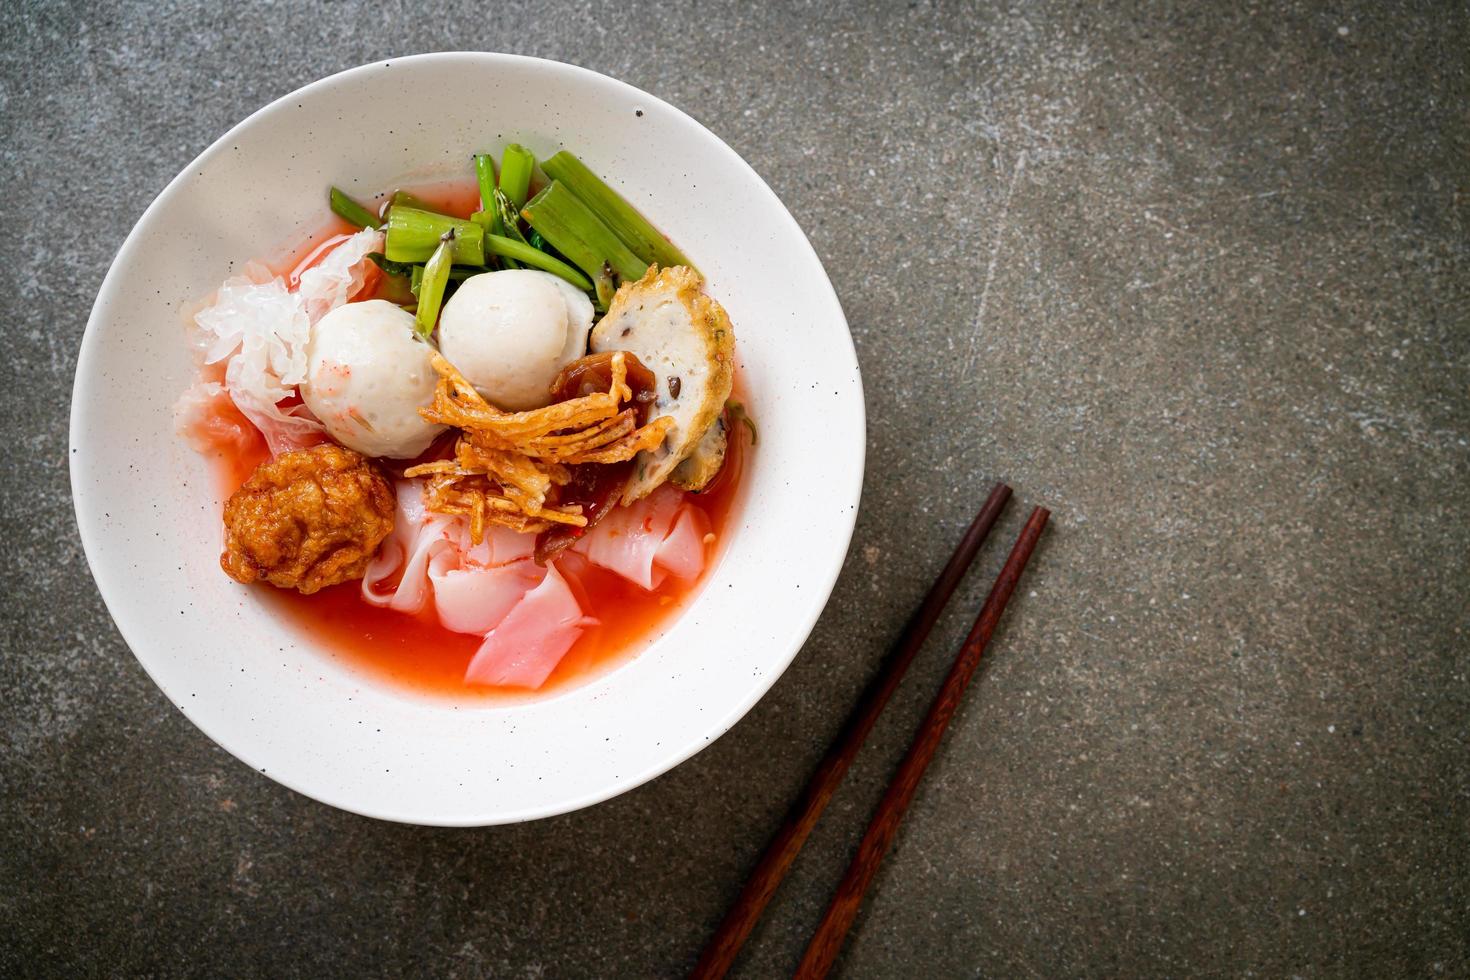 yen-ta-four - thailändische Nudeln mit verschiedenem Tofu und Fischbällchen in roter Suppe - asiatische Küche foto